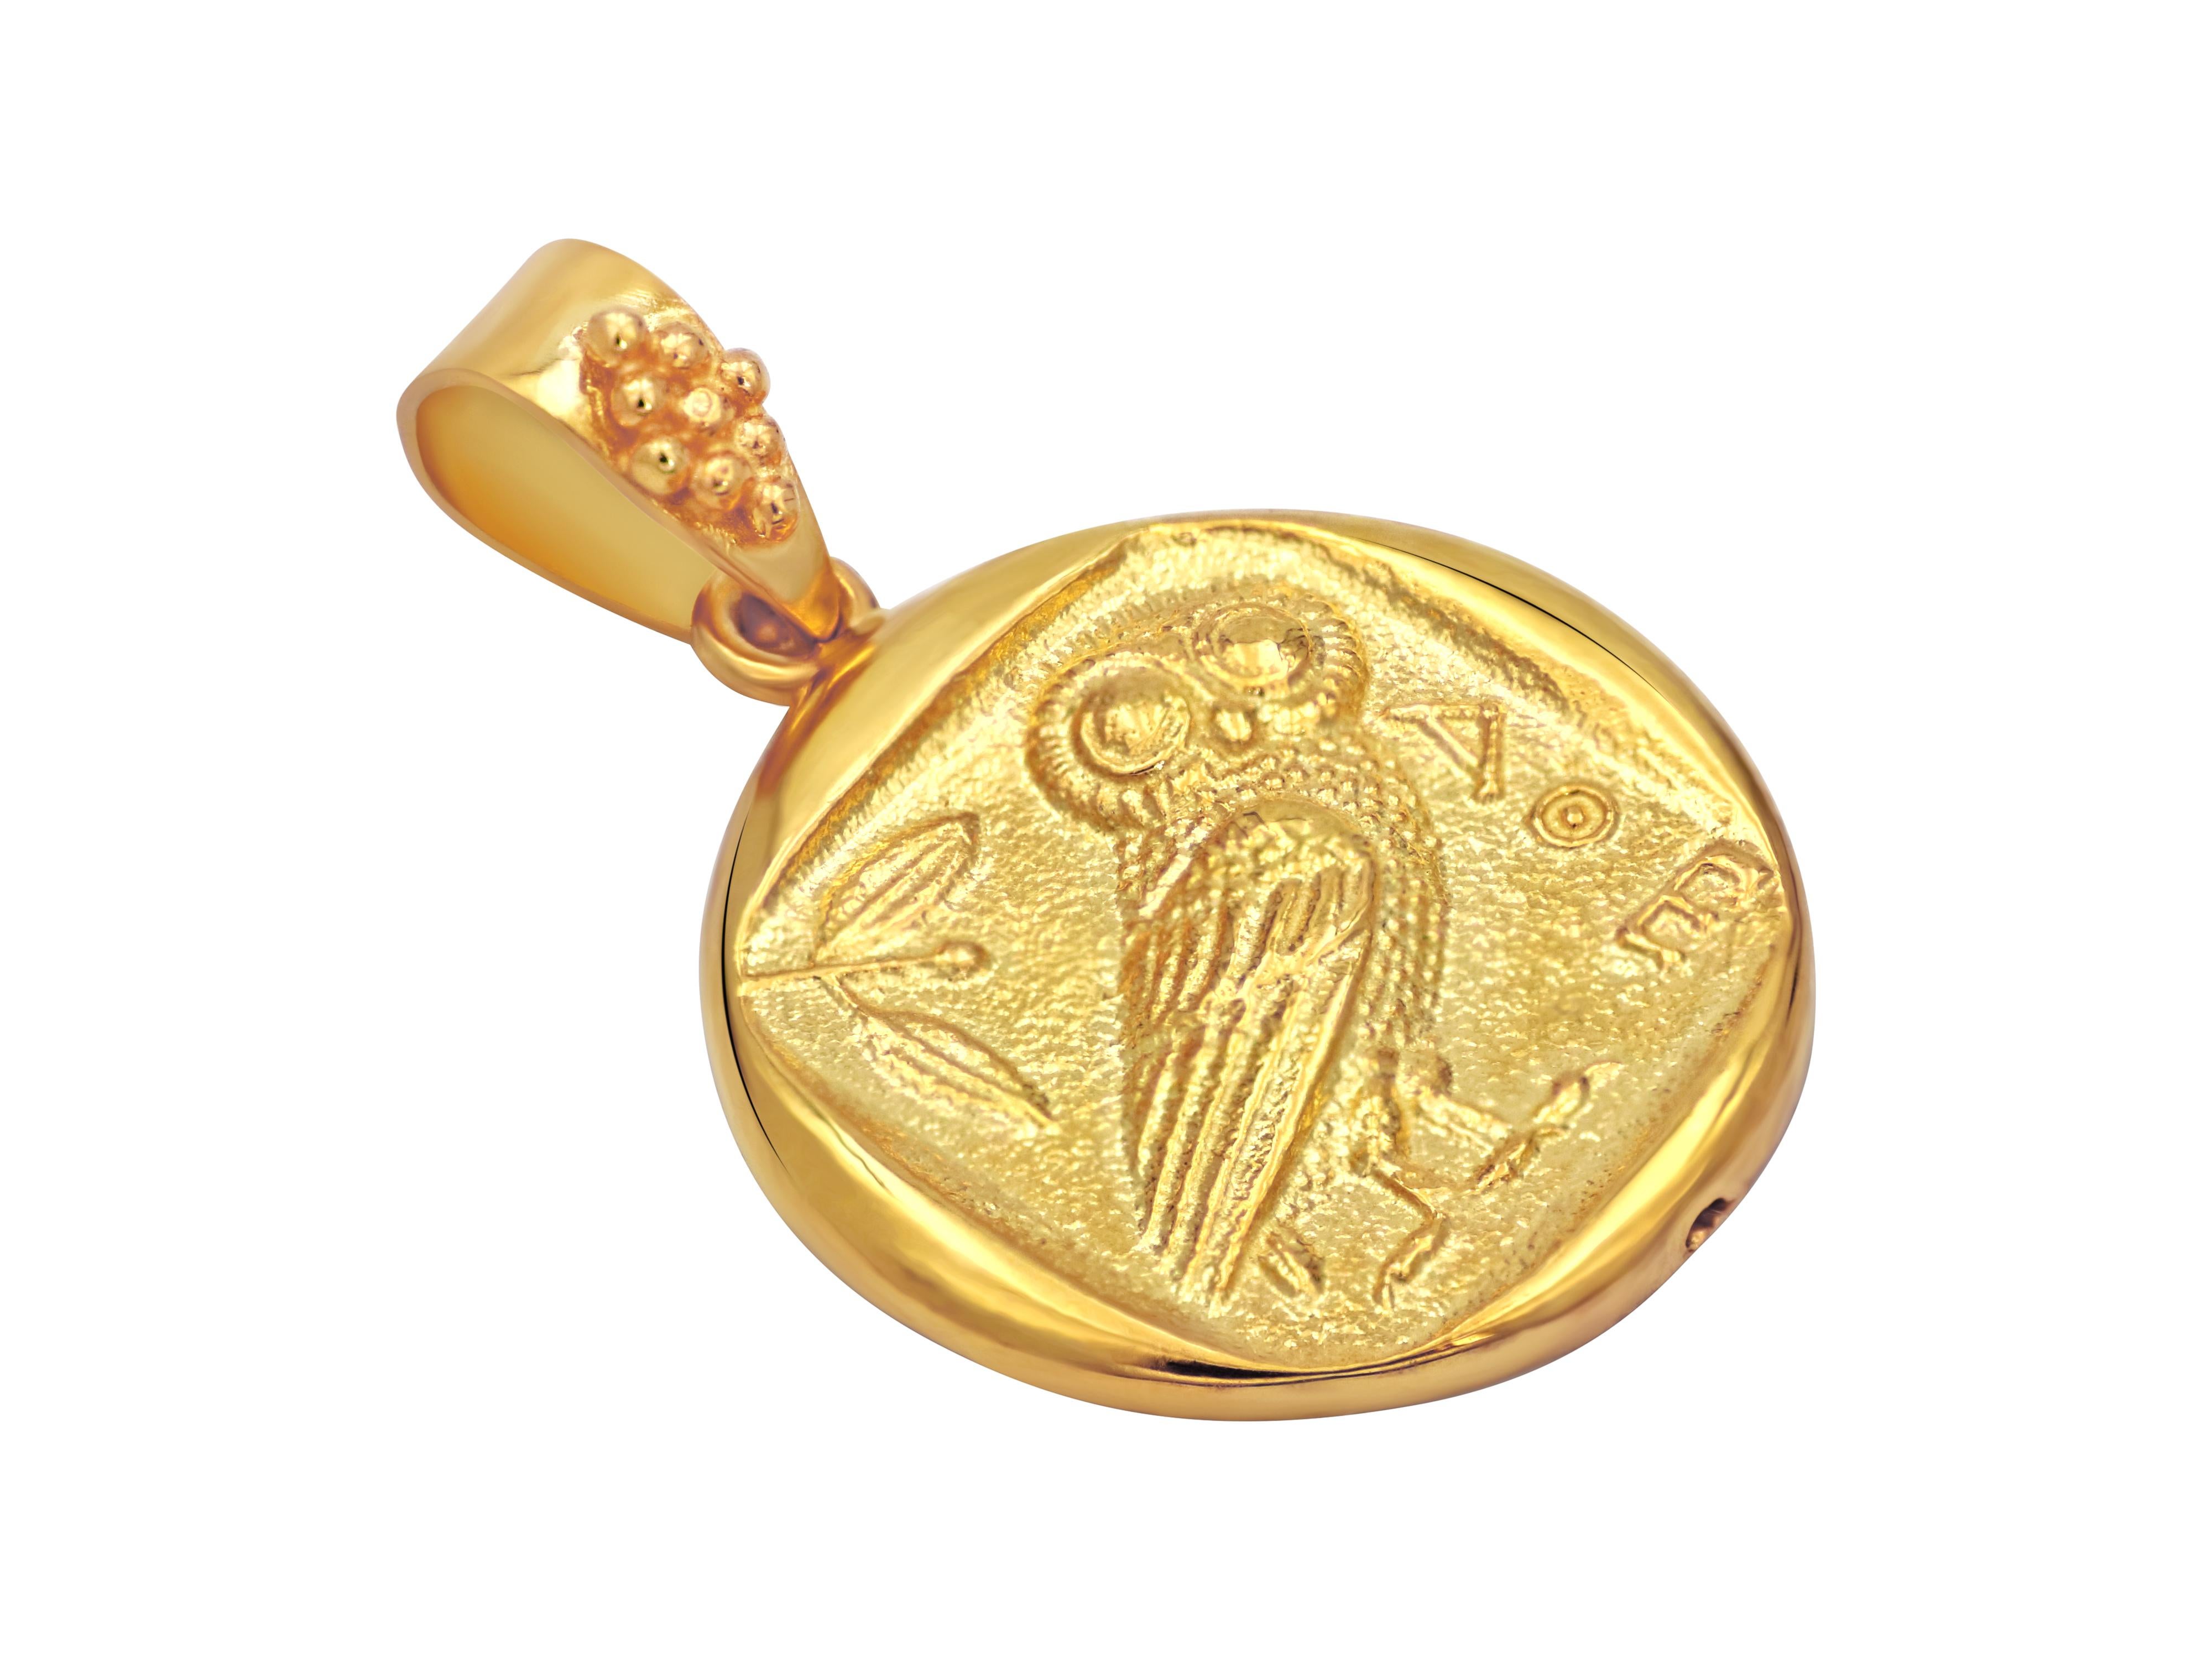 Replik einer antiken griechischen Münze aus dem Jahr 440 v. Chr., gefasst in 18 Karat Gelbgold. Die Eule war das Symbol Athens und der Weisheit und der Lieblingsvogel der Göttin Athene, in den sie sich sehr oft verwandelte.